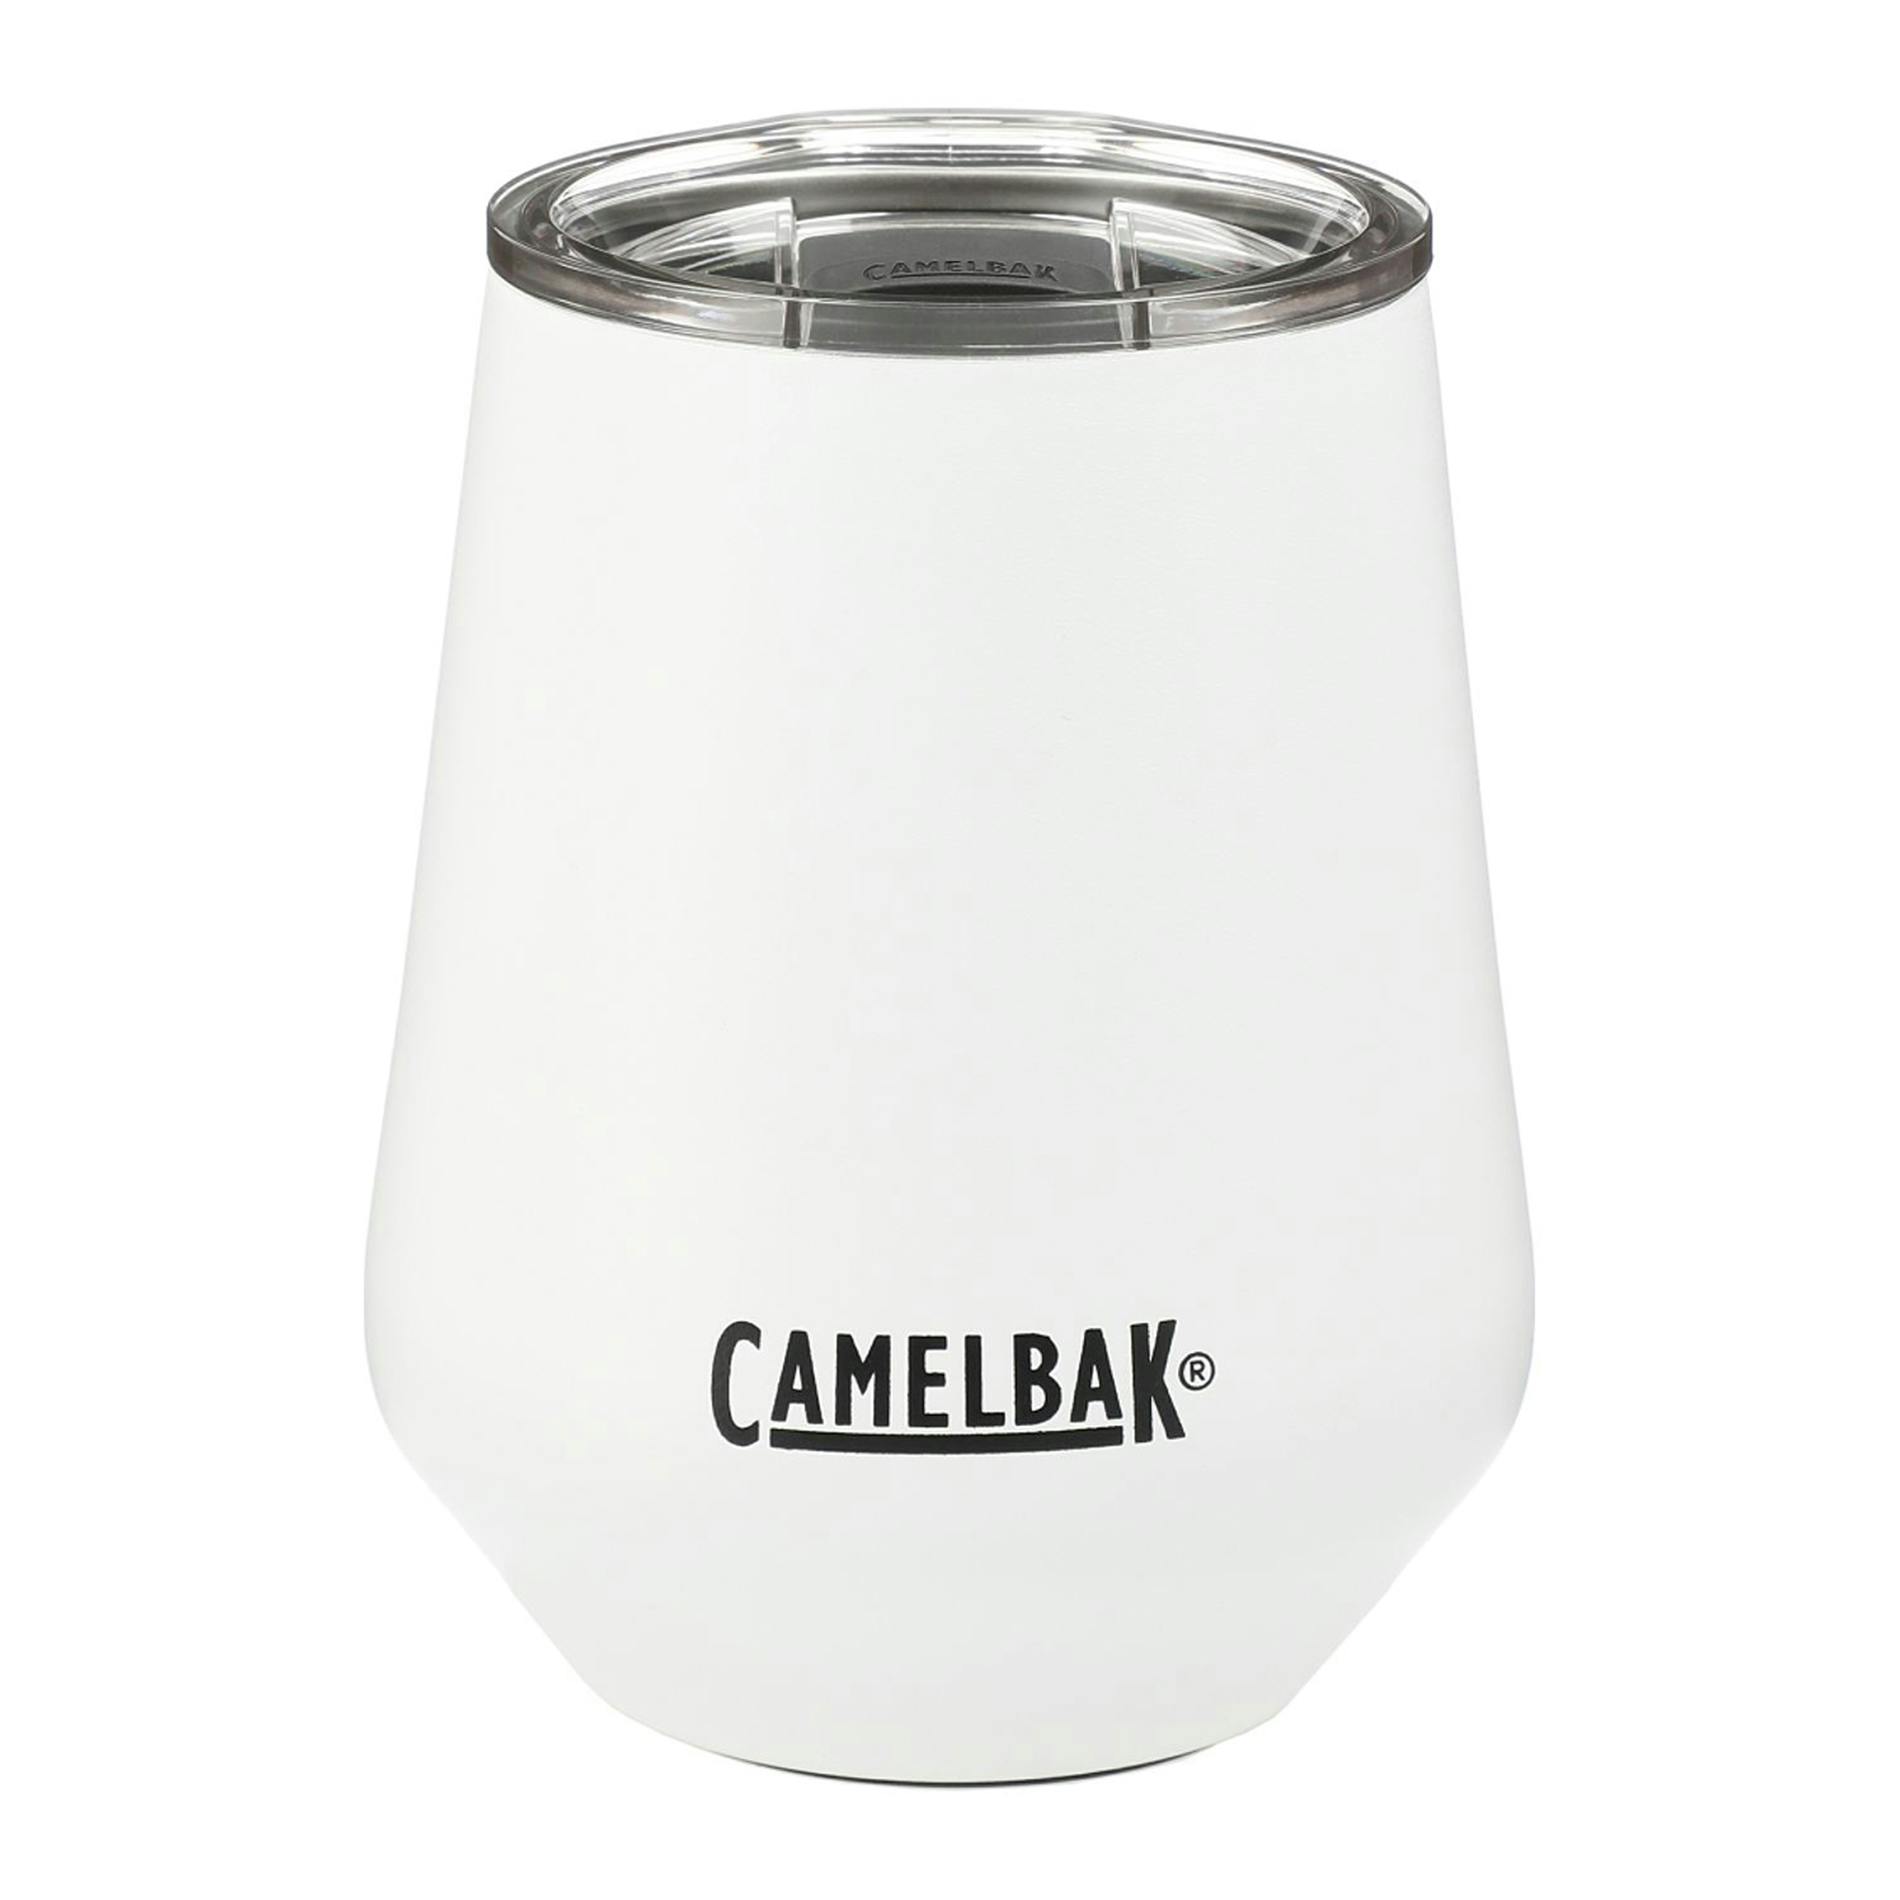 CamelBak Wine Tumbler 12oz - additional Image 1